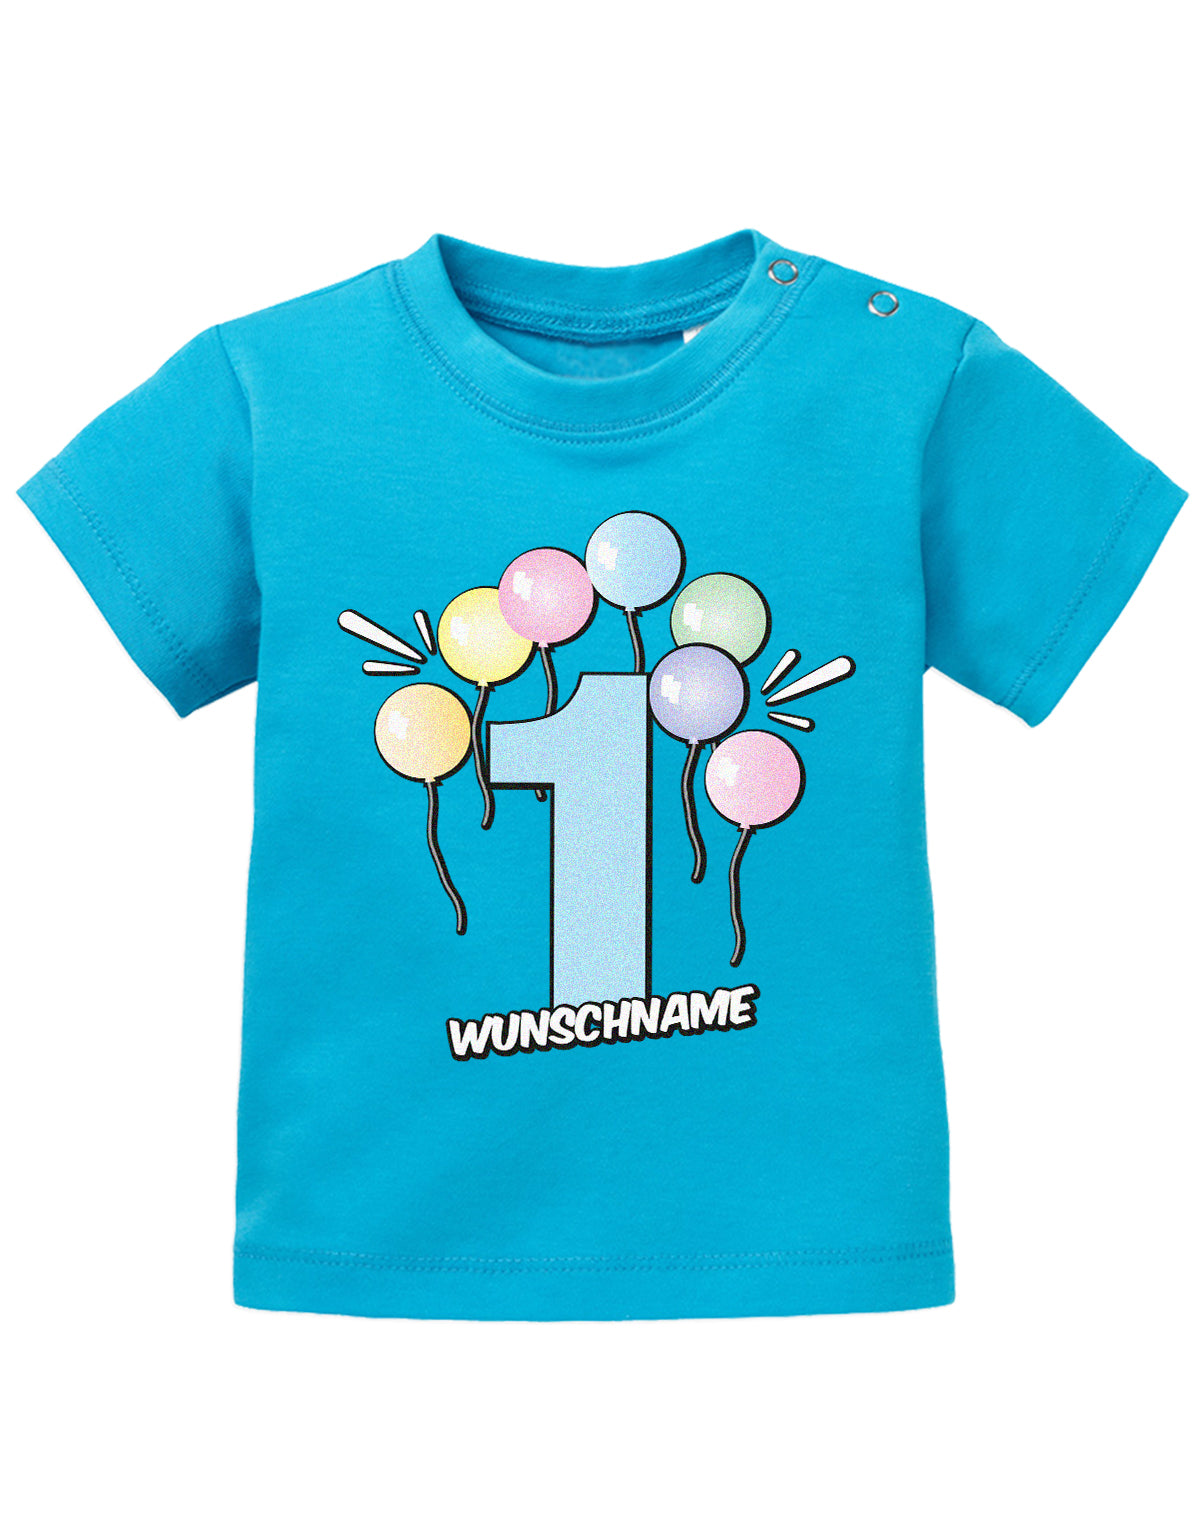 Baby T-Shirt erster Geburtstag mit Ballons und Wunschnamen-blau